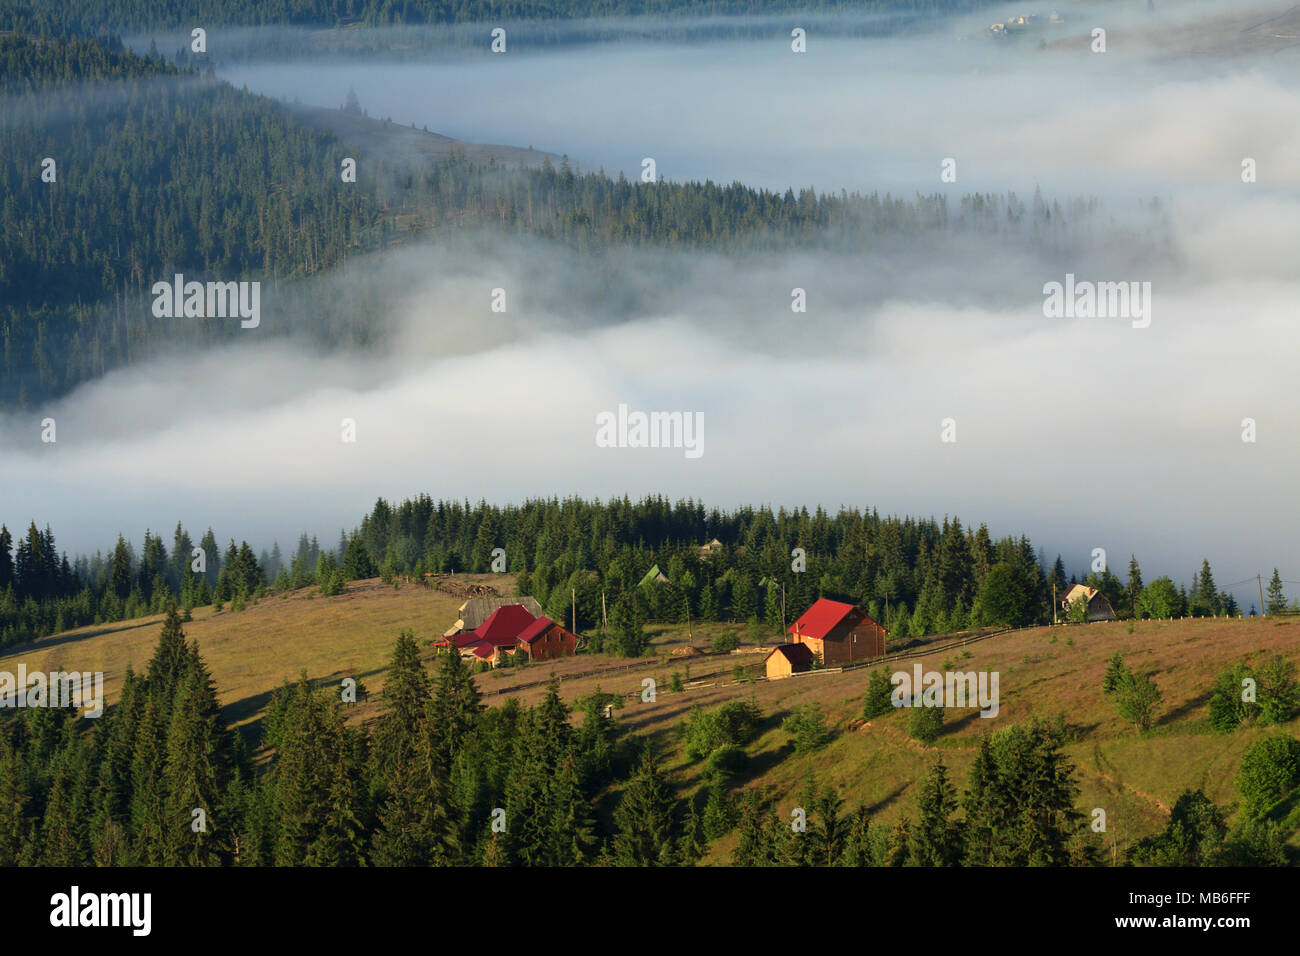 Un paisible village dans une vallée couverte de brouillard. Les Montagnes Apuseni, région des Carpates, en Roumanie. Banque D'Images